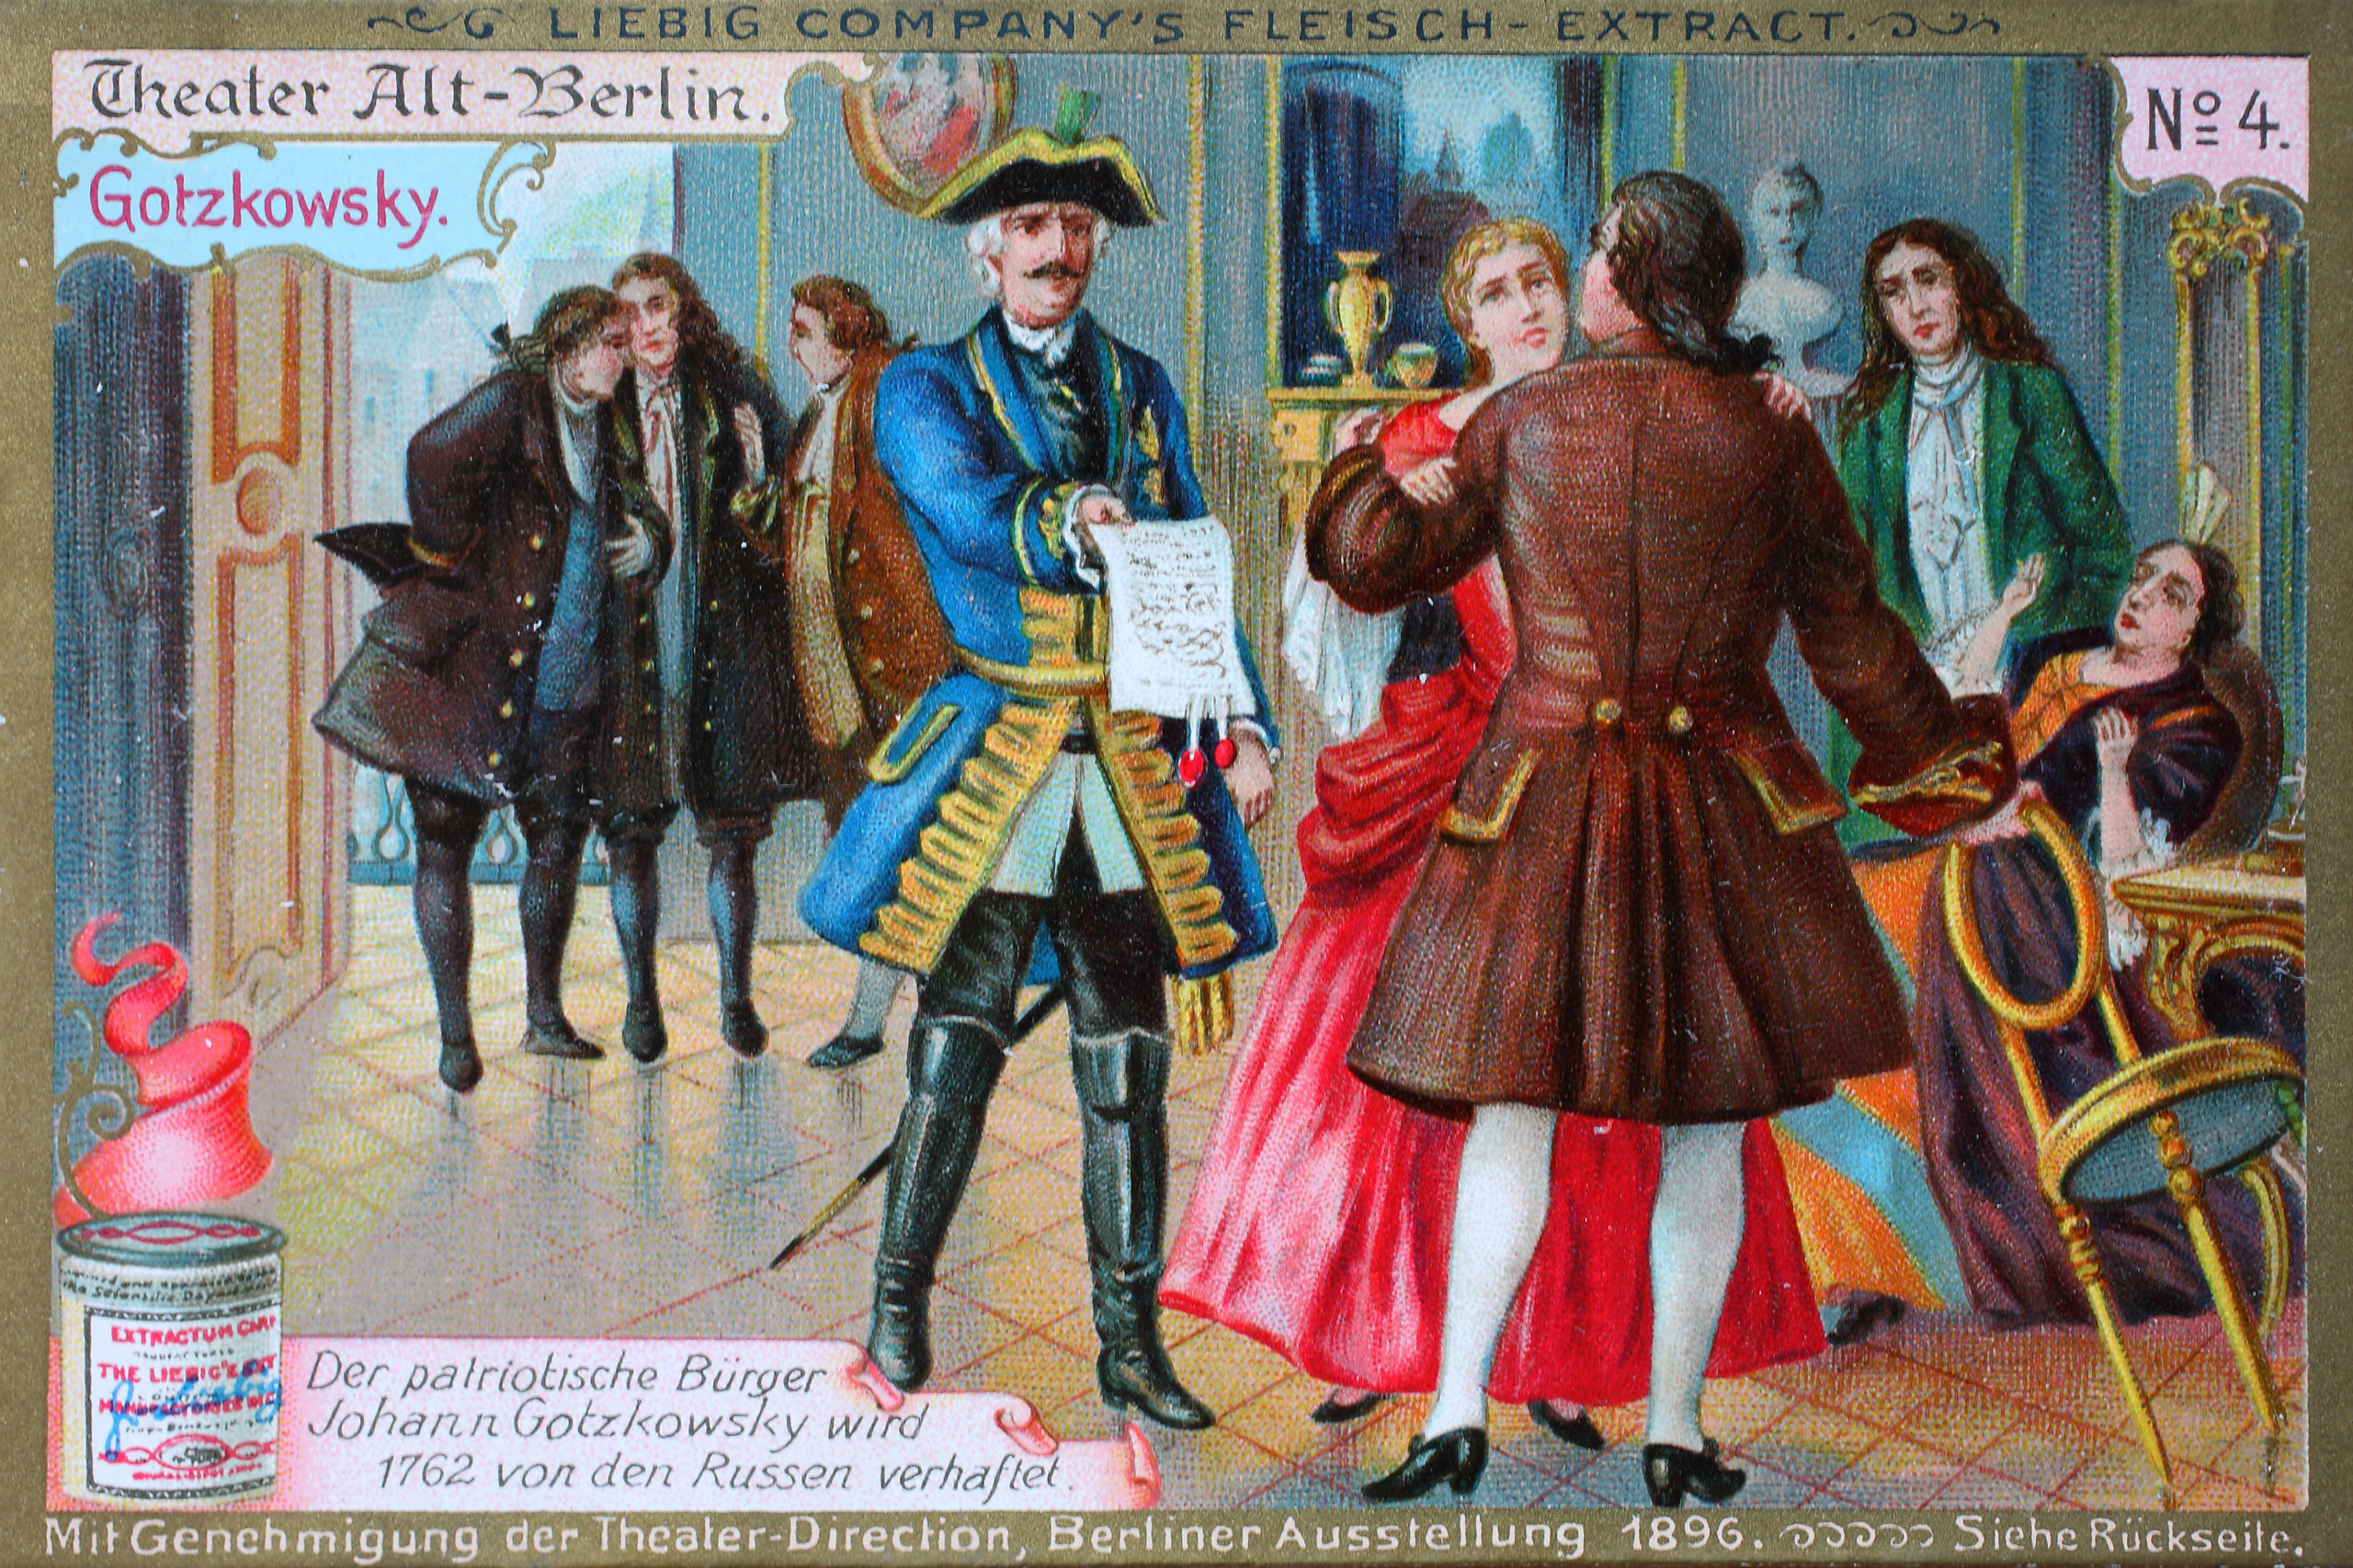 Berlin und Polen: Bilderserie Theater Alt-Berlin: Johann Gotzkowsky wird 1762 von den Russen verhaftet, Illustration von 1896. Foto: Imago/H. Tschanz-Hofmann